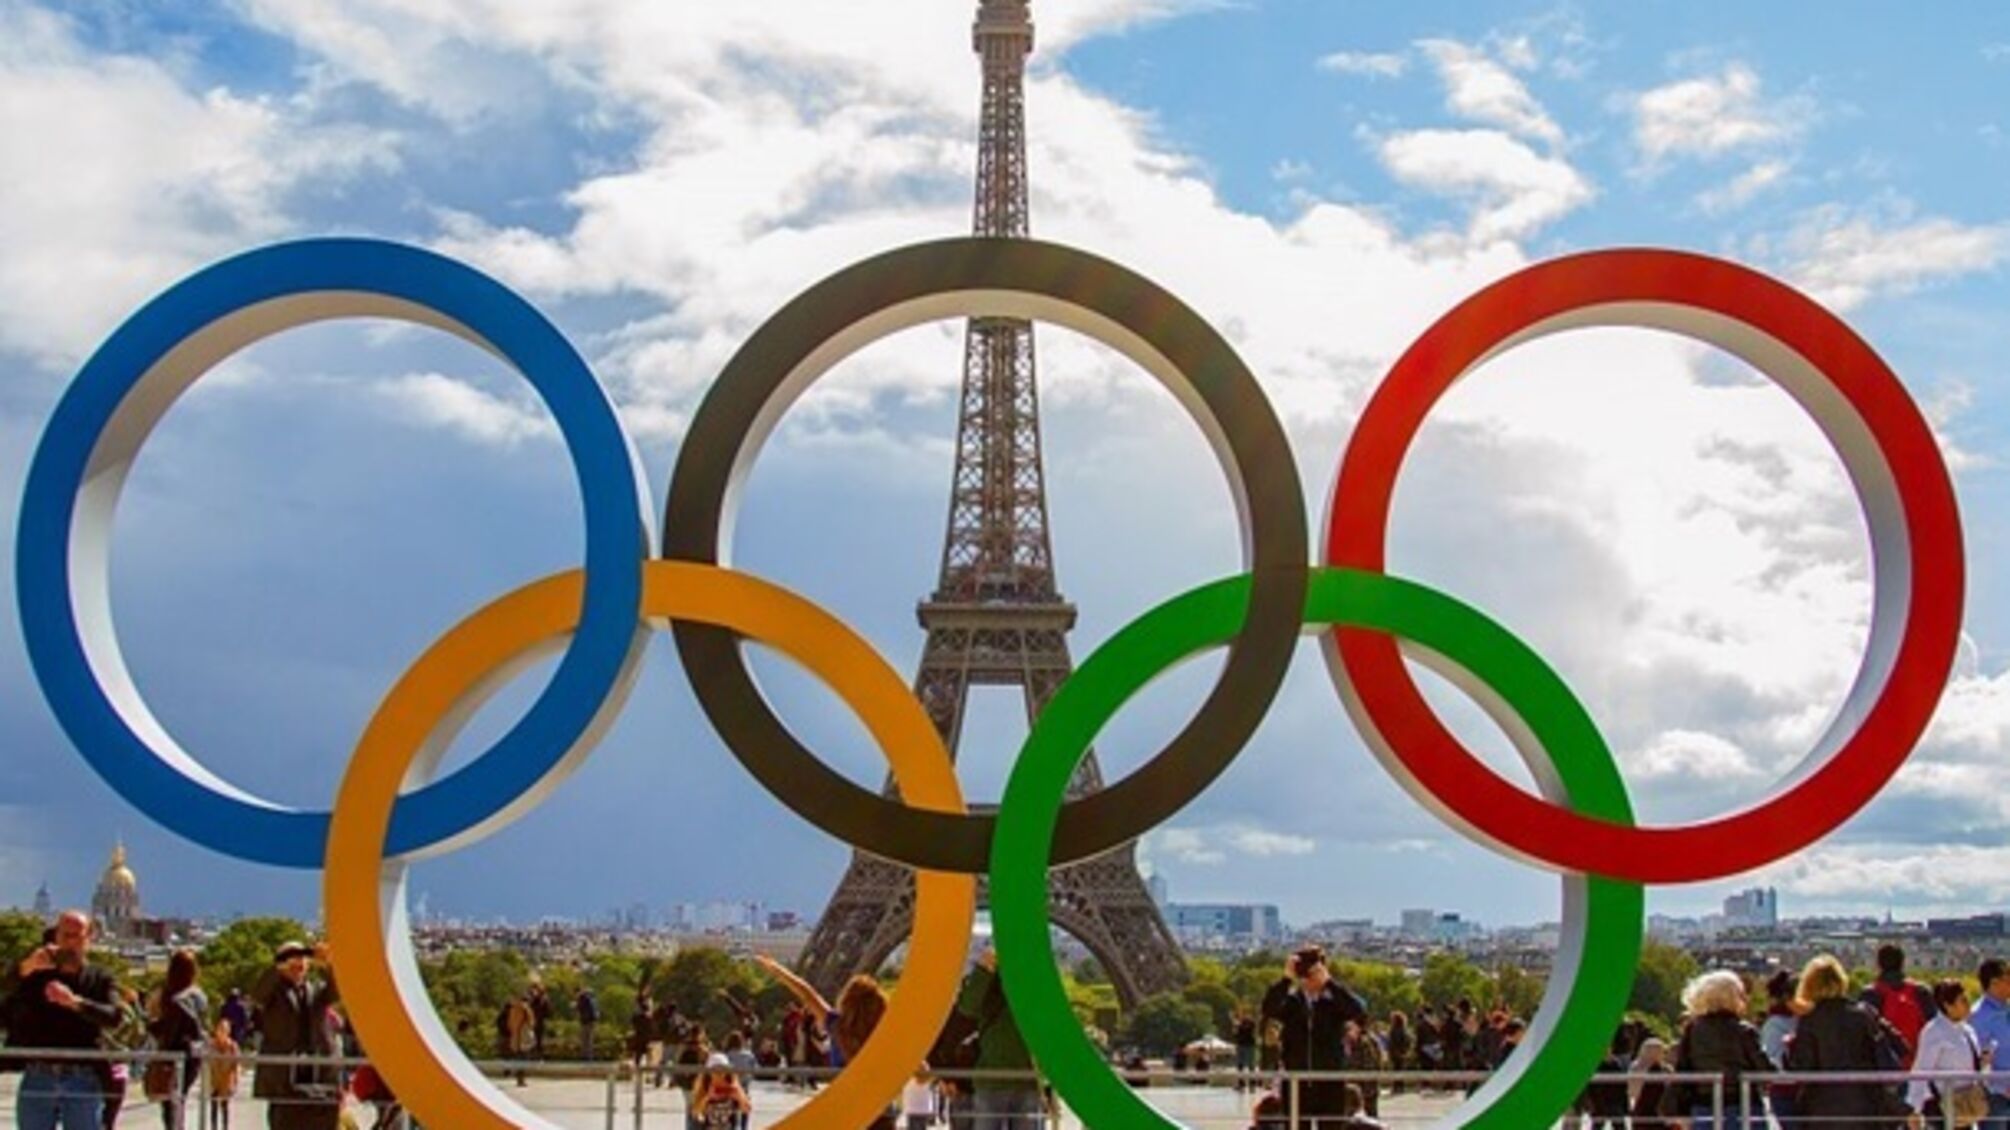 Безопасность Олимпийских игр под угрозой: мошенники похитили тайные схемы